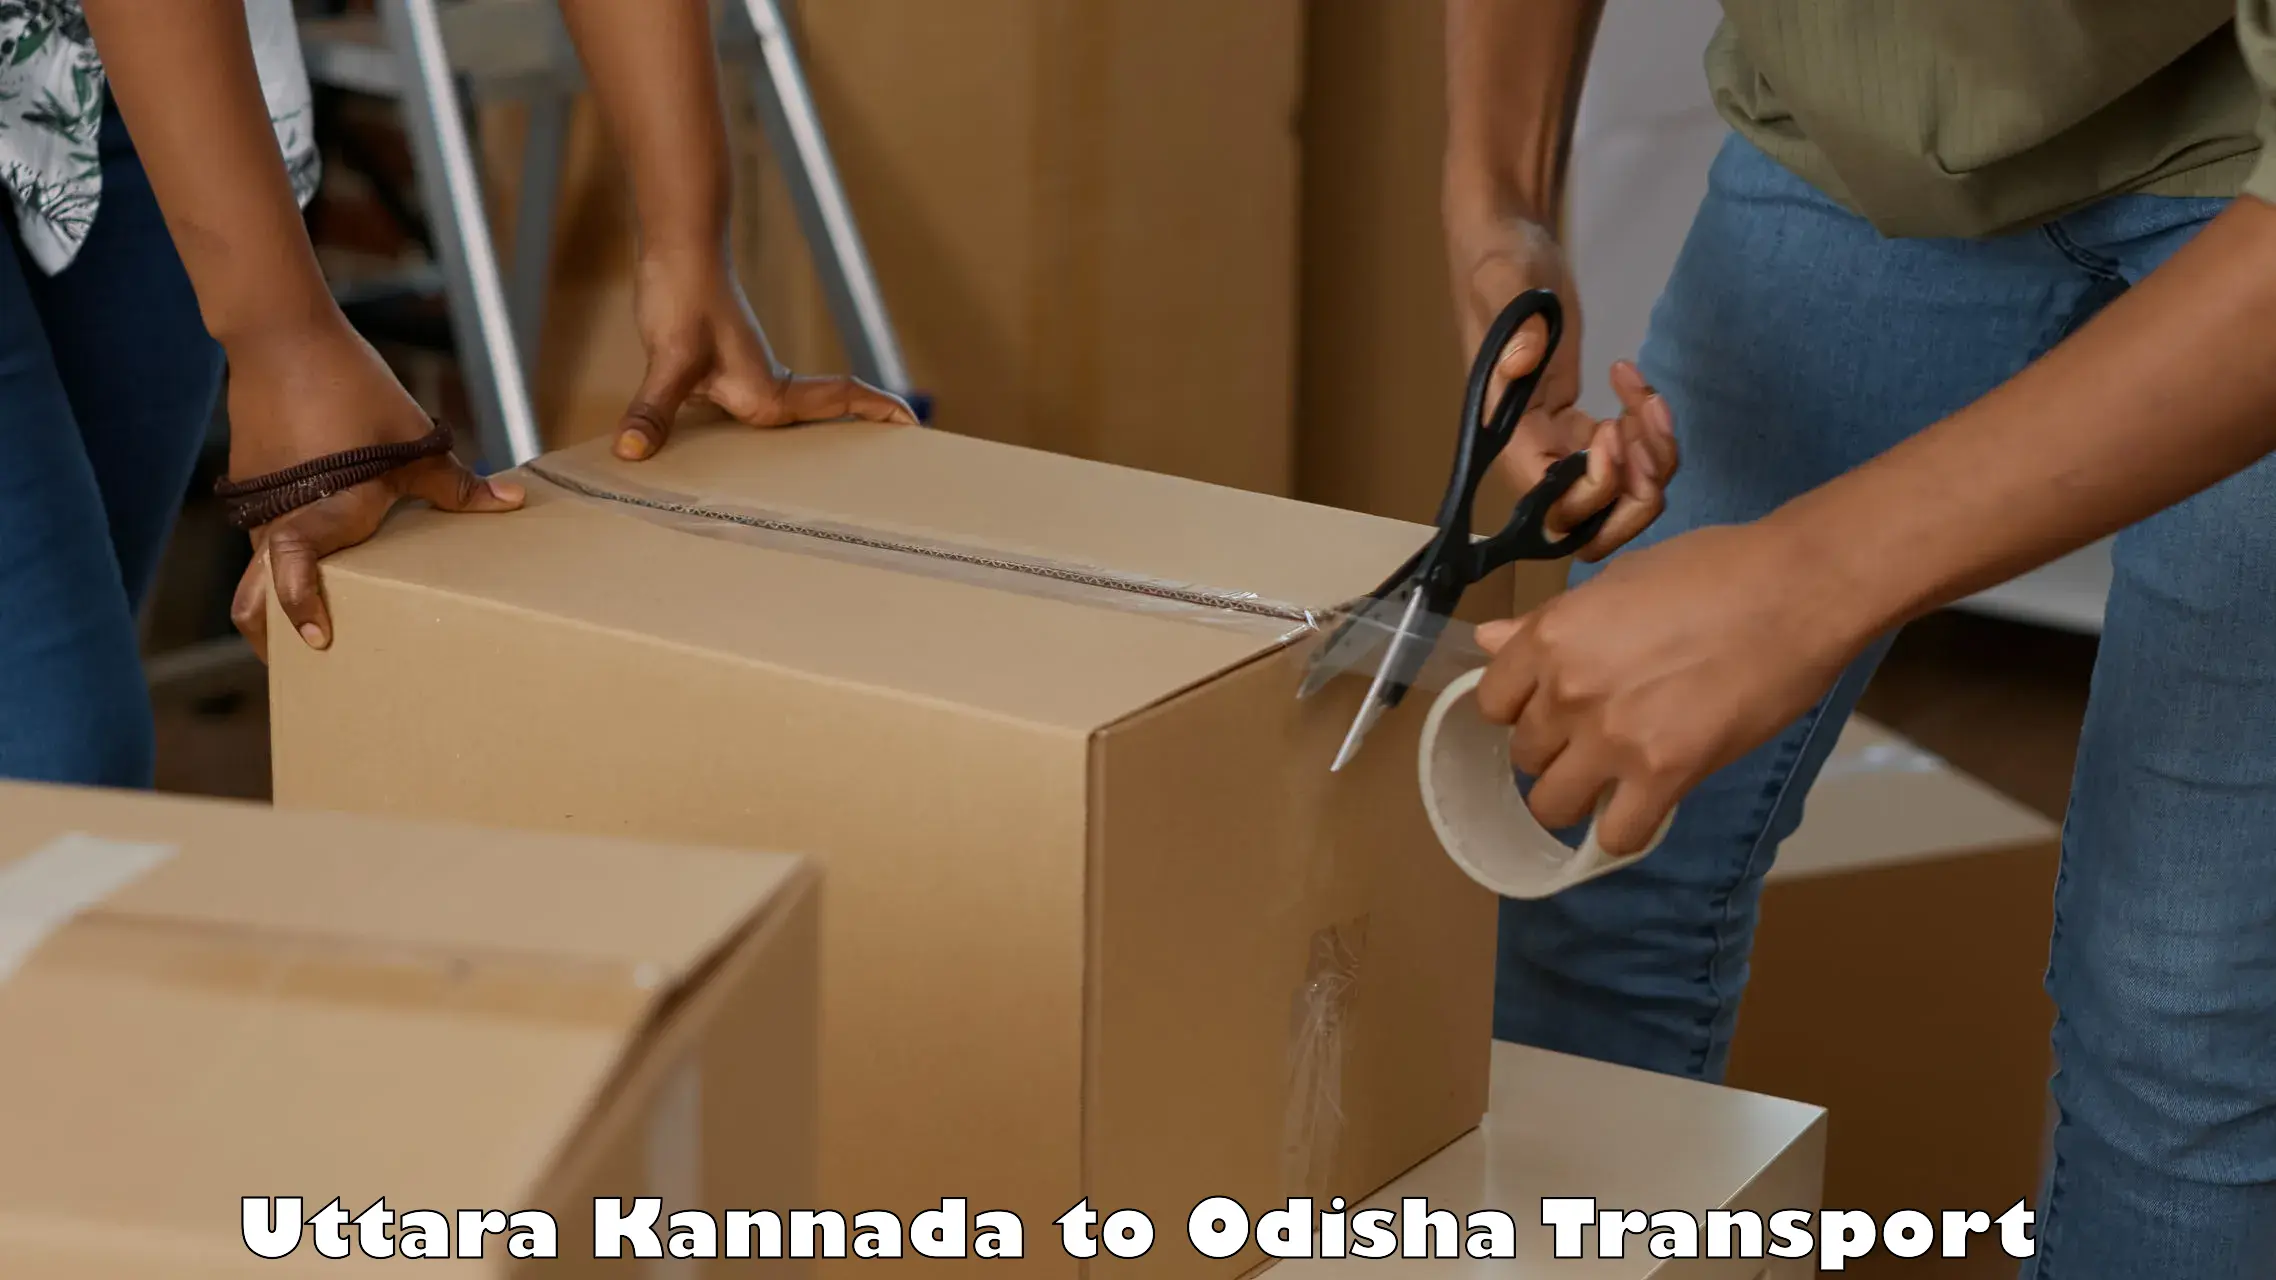 Shipping services Uttara Kannada to Odisha